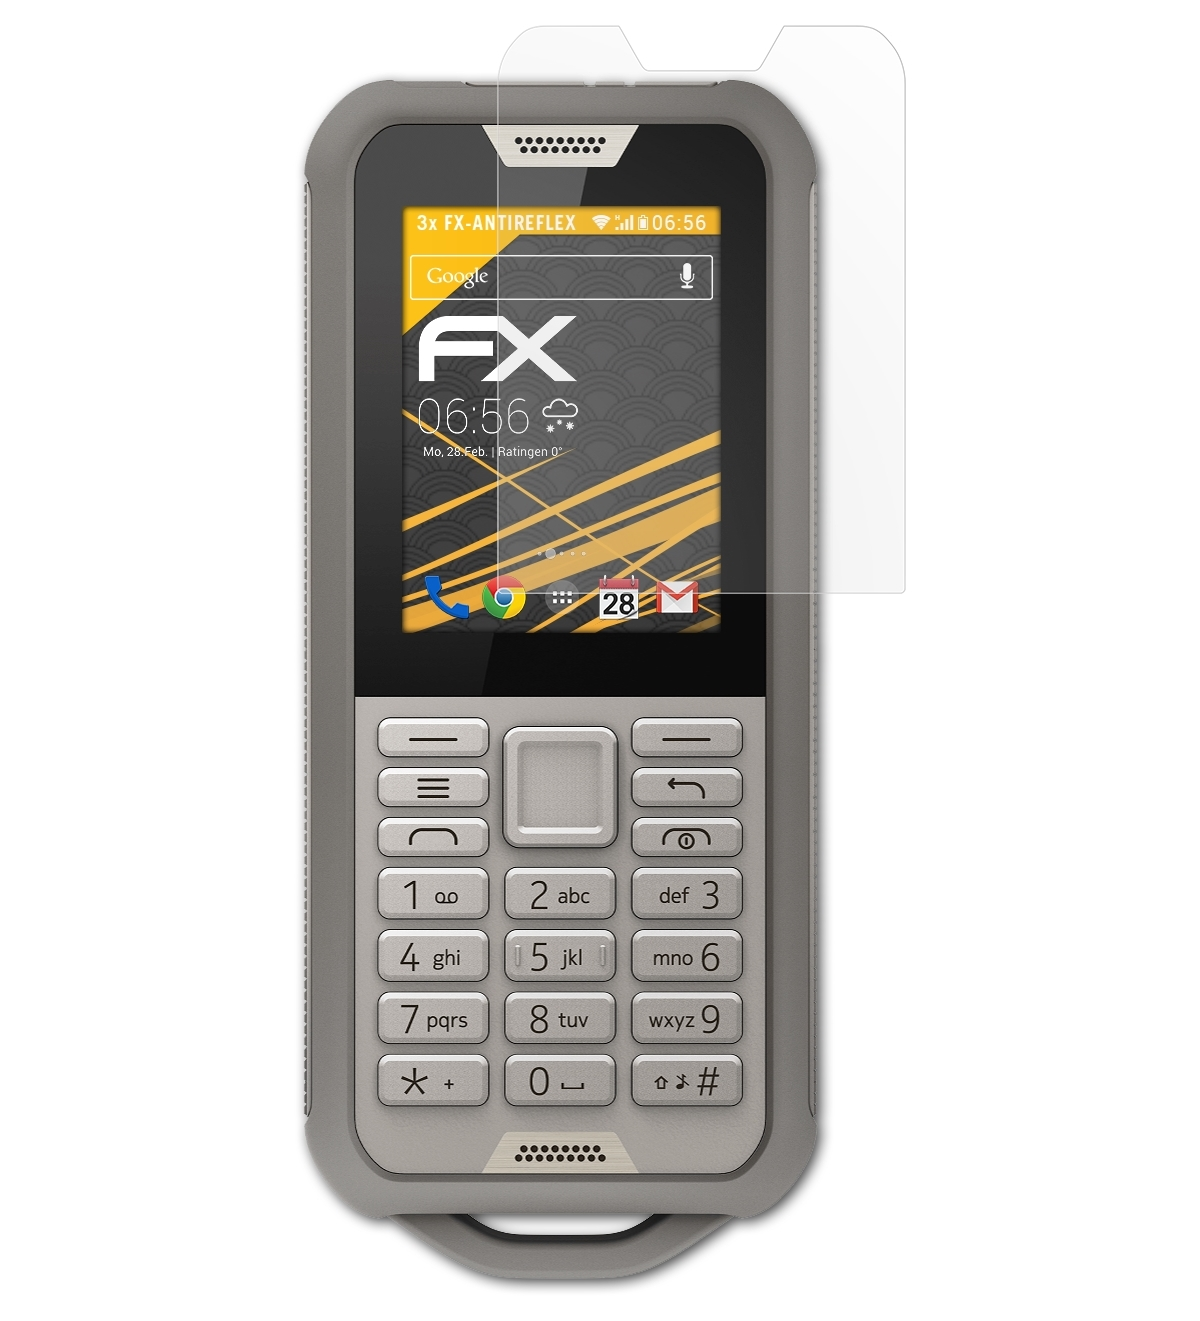 ATFOLIX 3x FX-Antireflex Displayschutz(für Nokia Tough) 800